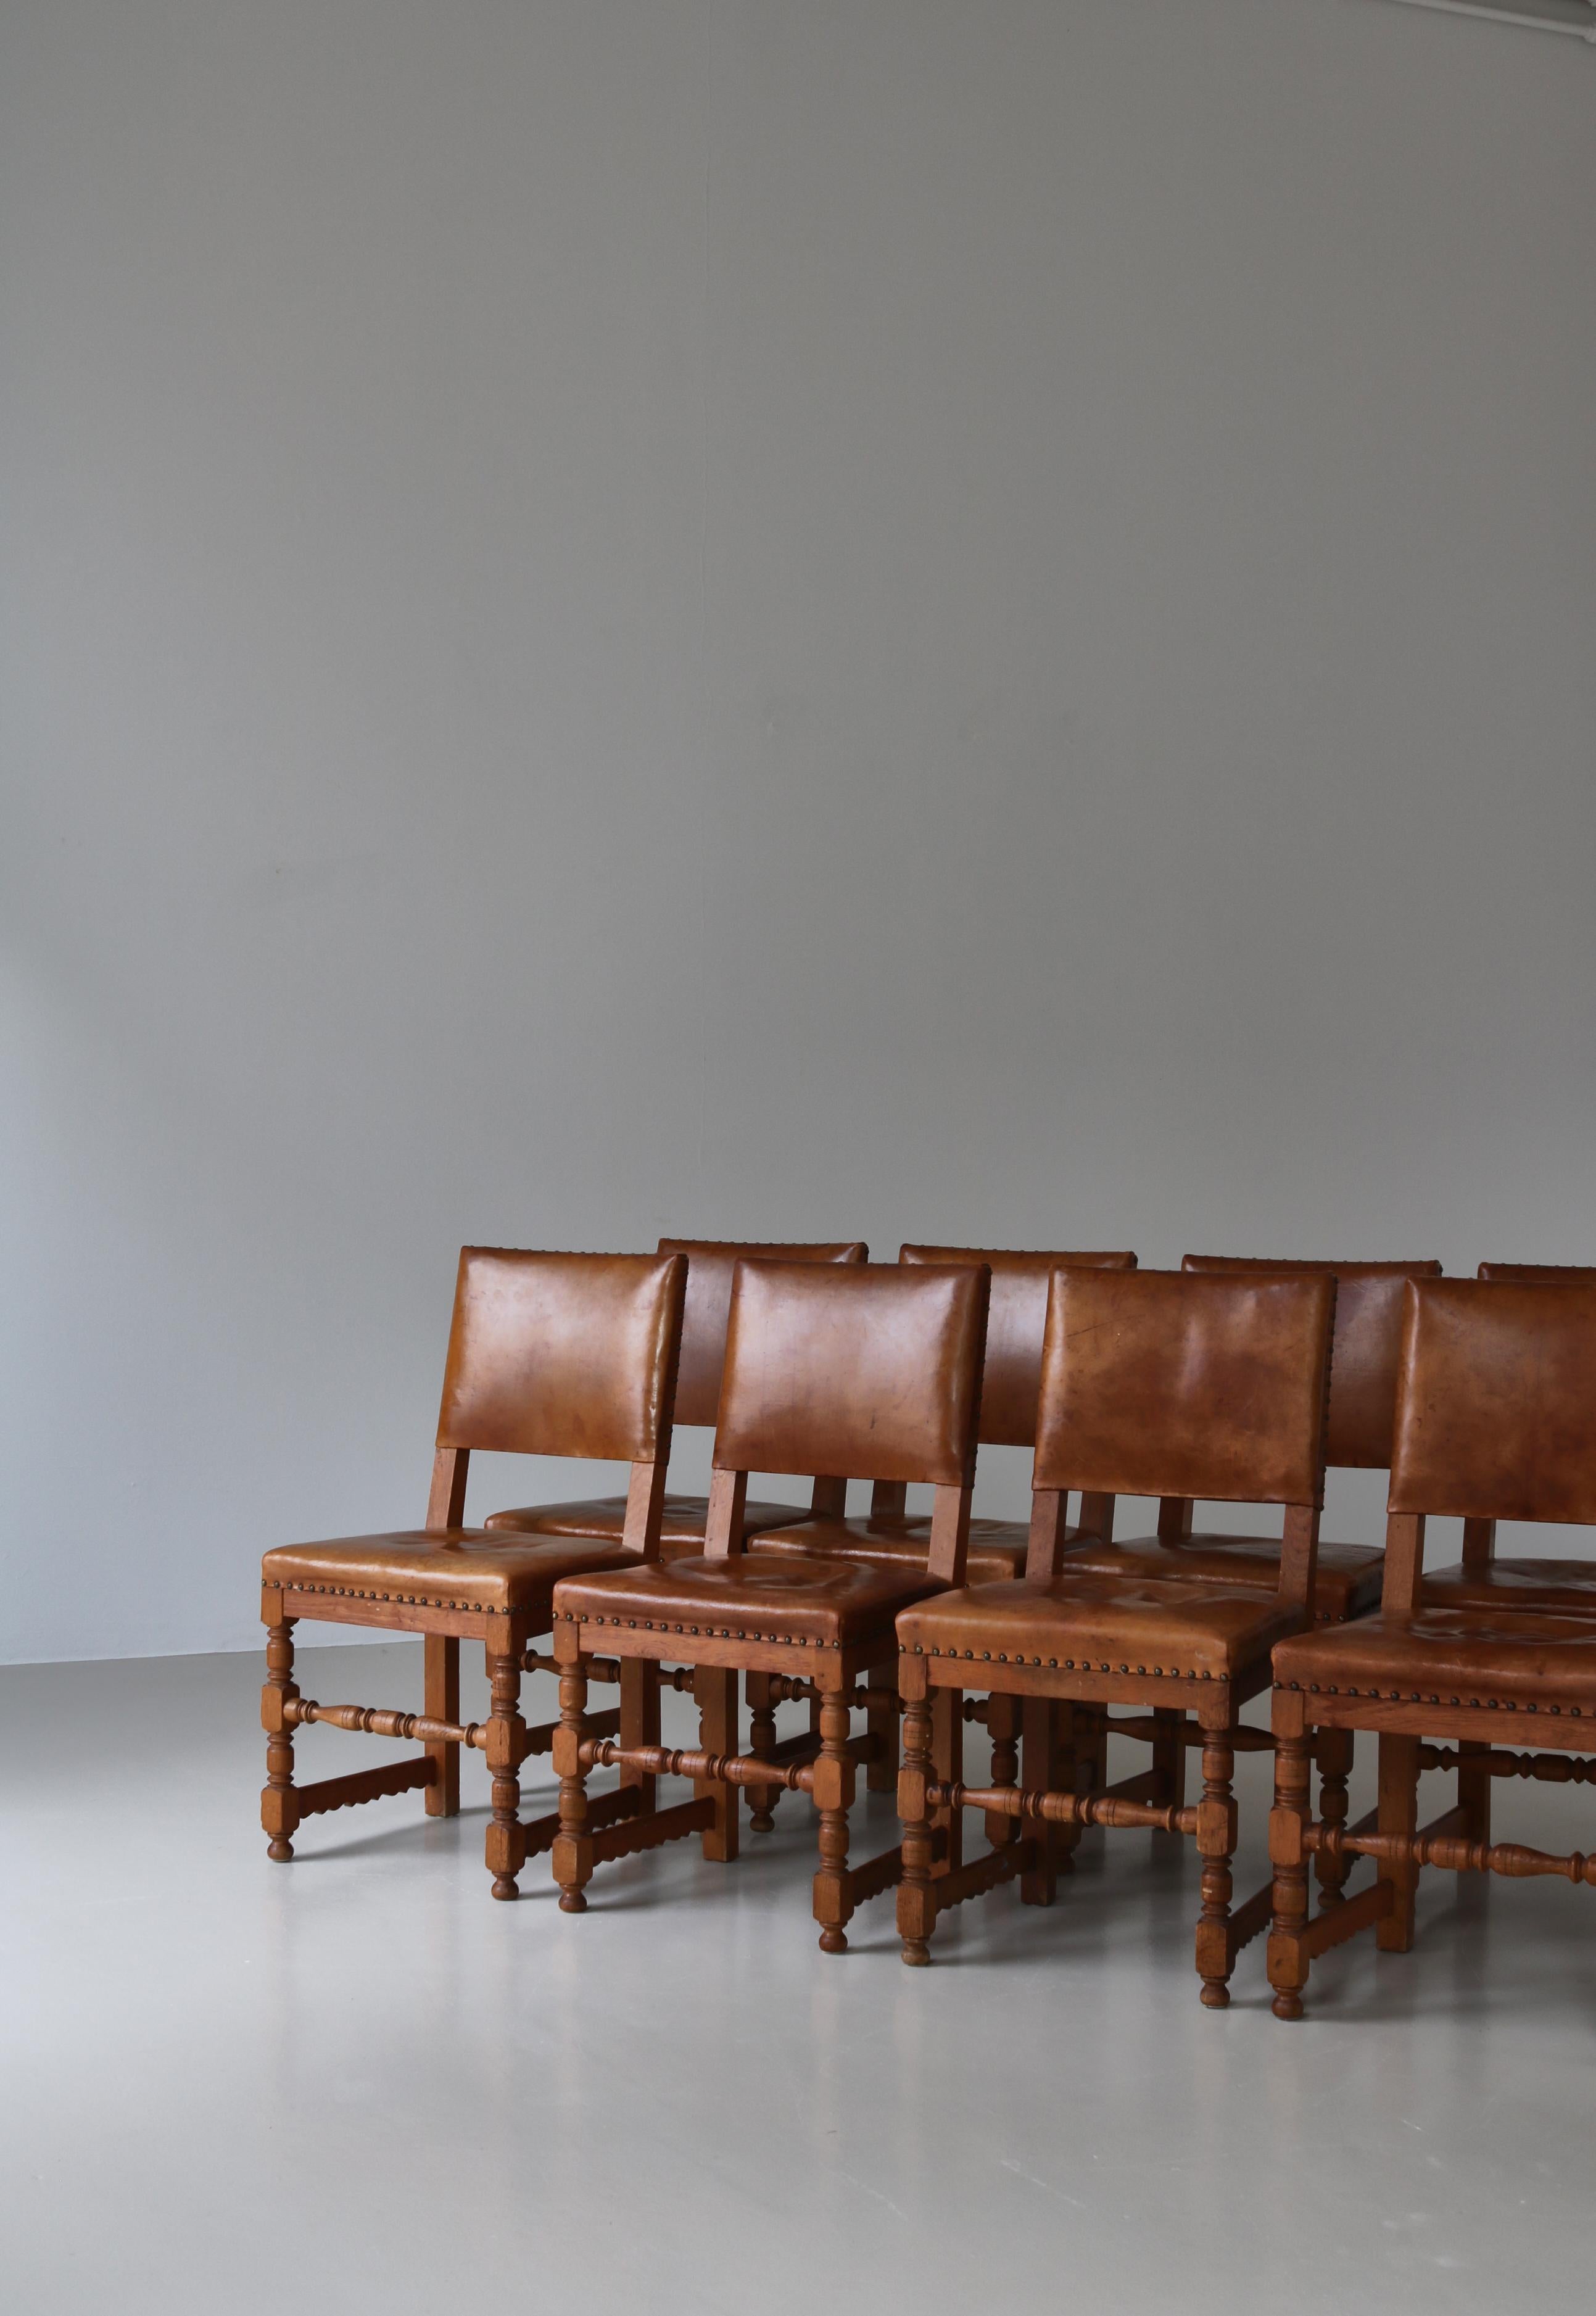 Superbe ensemble de chaises de salle à manger en chêne massif et cuir naturel fabriqué par le maître ébéniste danois Lars Møller, à Copenhague, dans les années 1930. Les chaises sont modernes mais avec une expression ludique et de nombreux détails